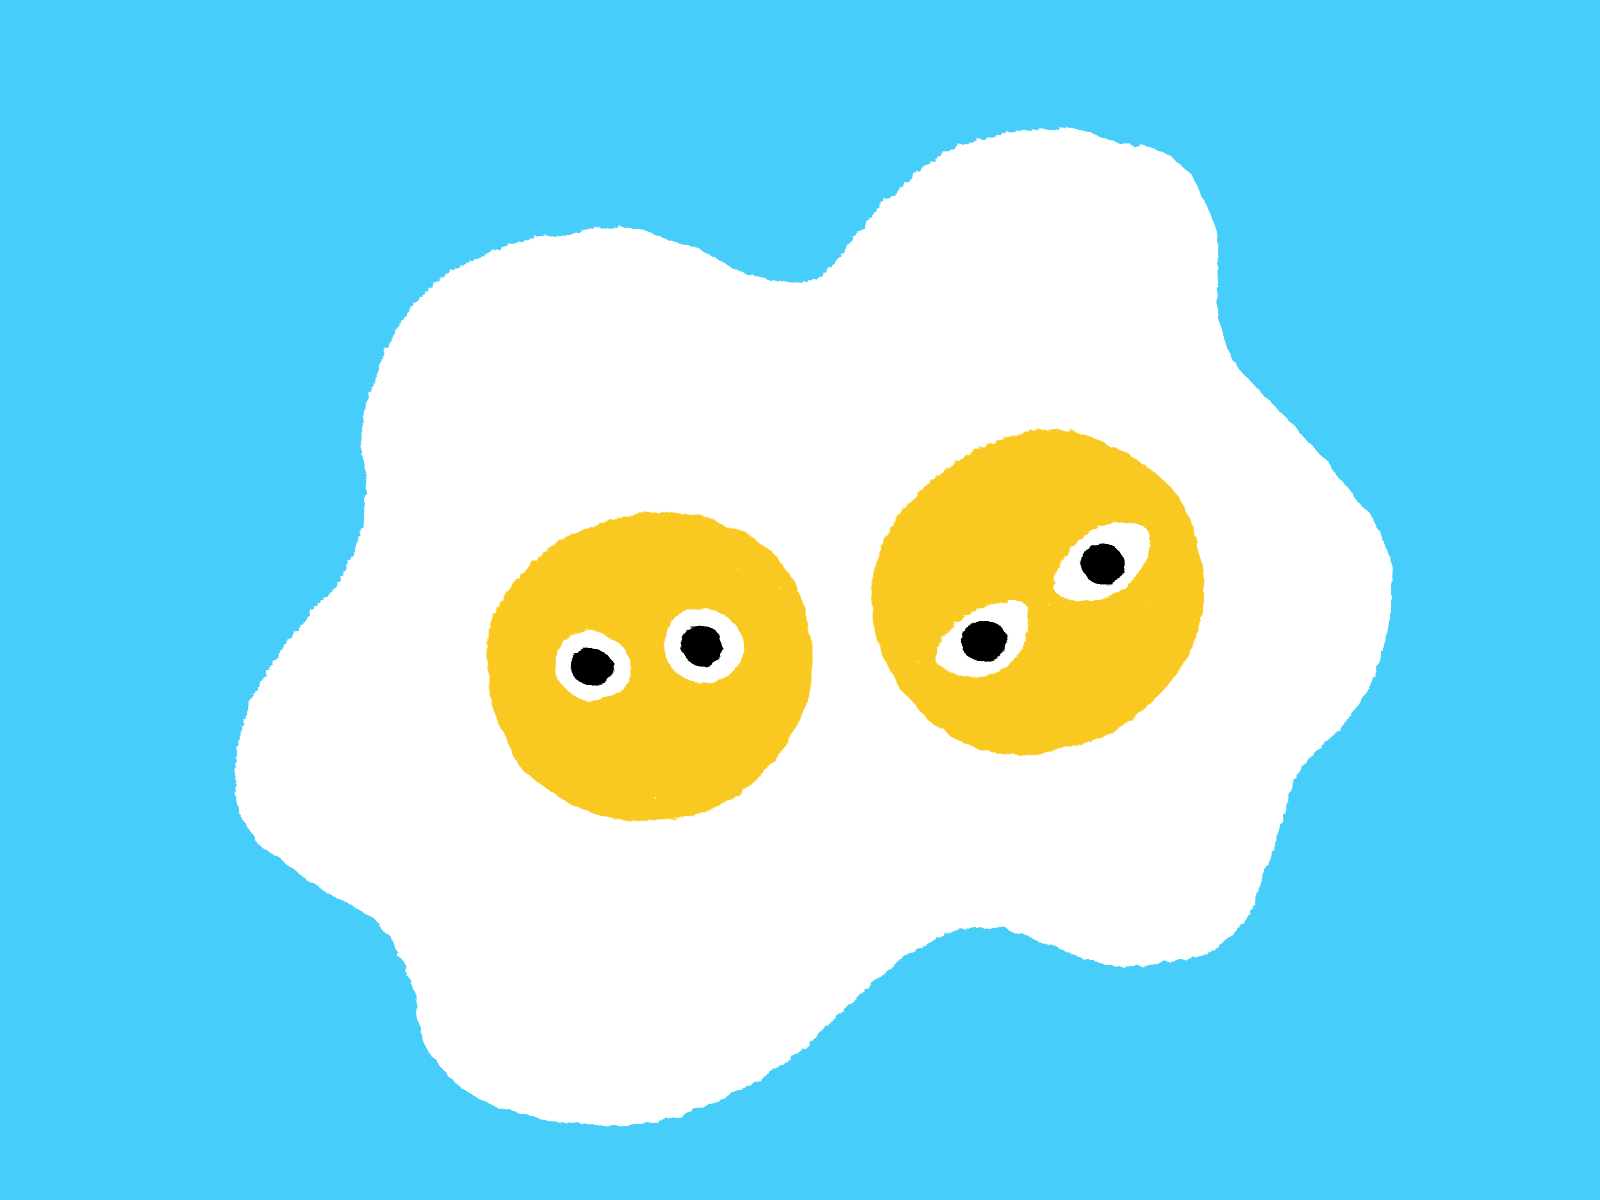 Eggs animated gif animation blinking eggs eyes illustration